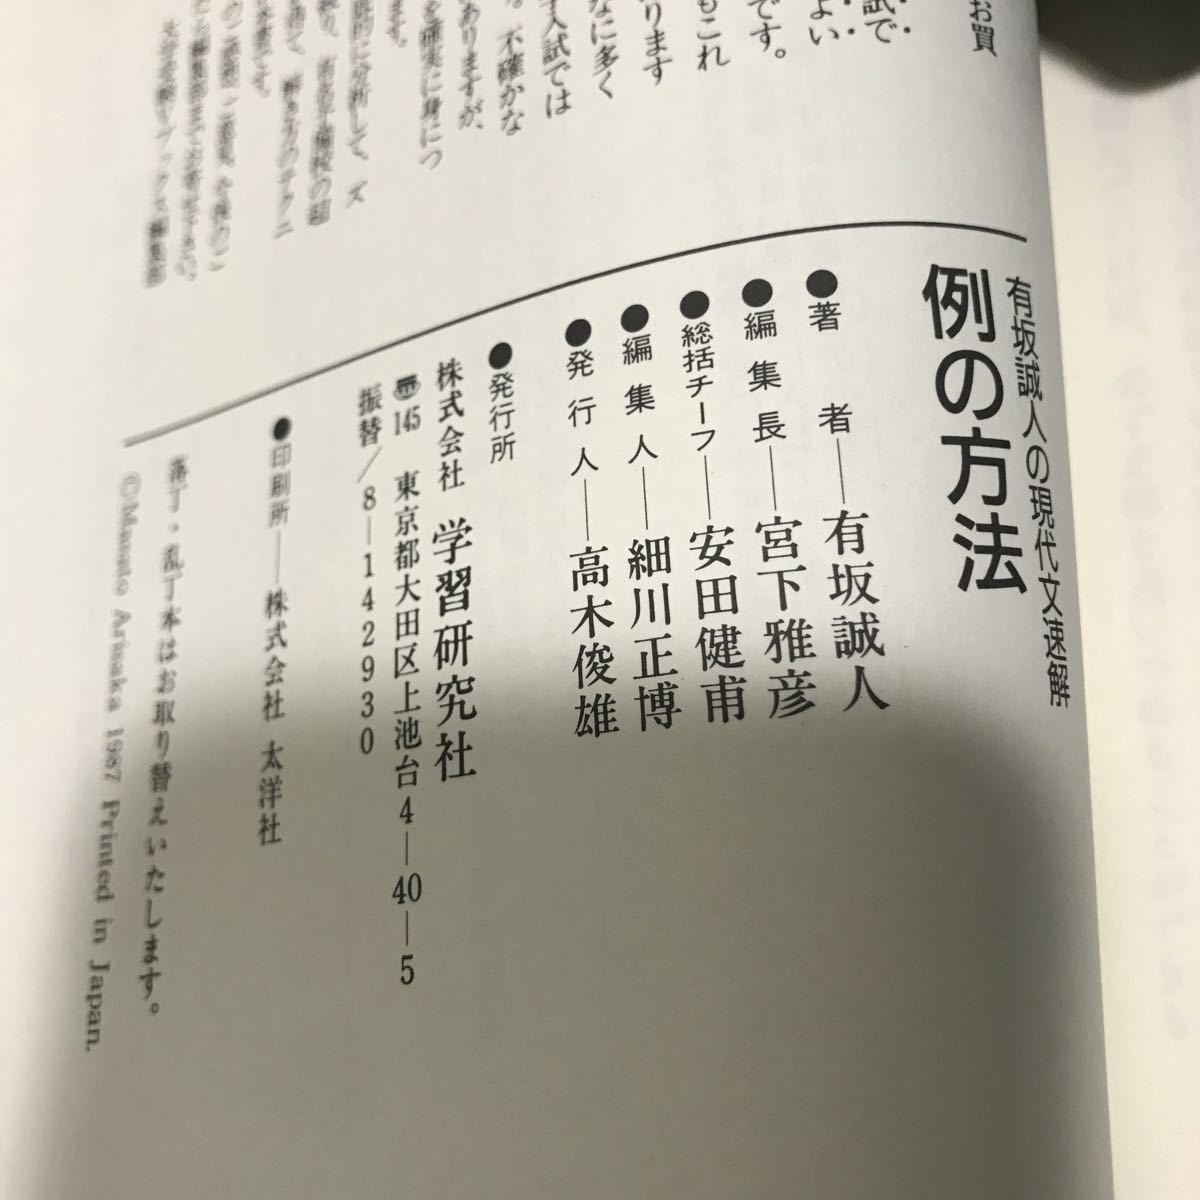 有坂誠人の現代文速解・例の方法2冊セット 正規販売店品 本・音楽